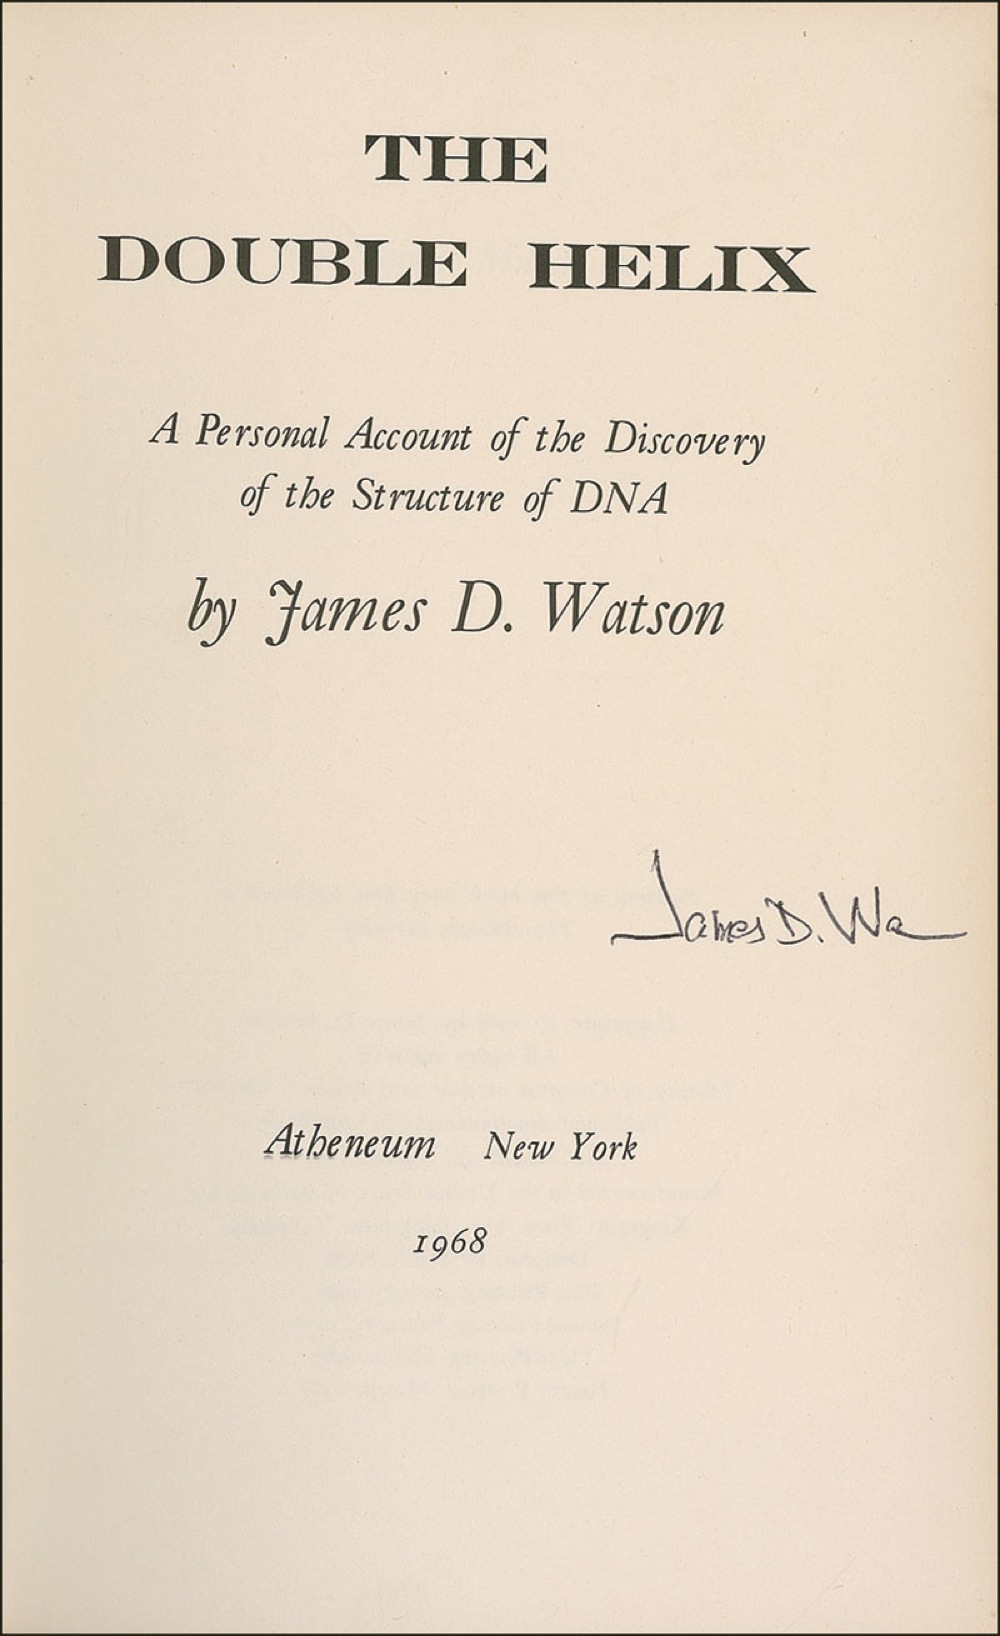 Lot #264 DNA: James D. Watson